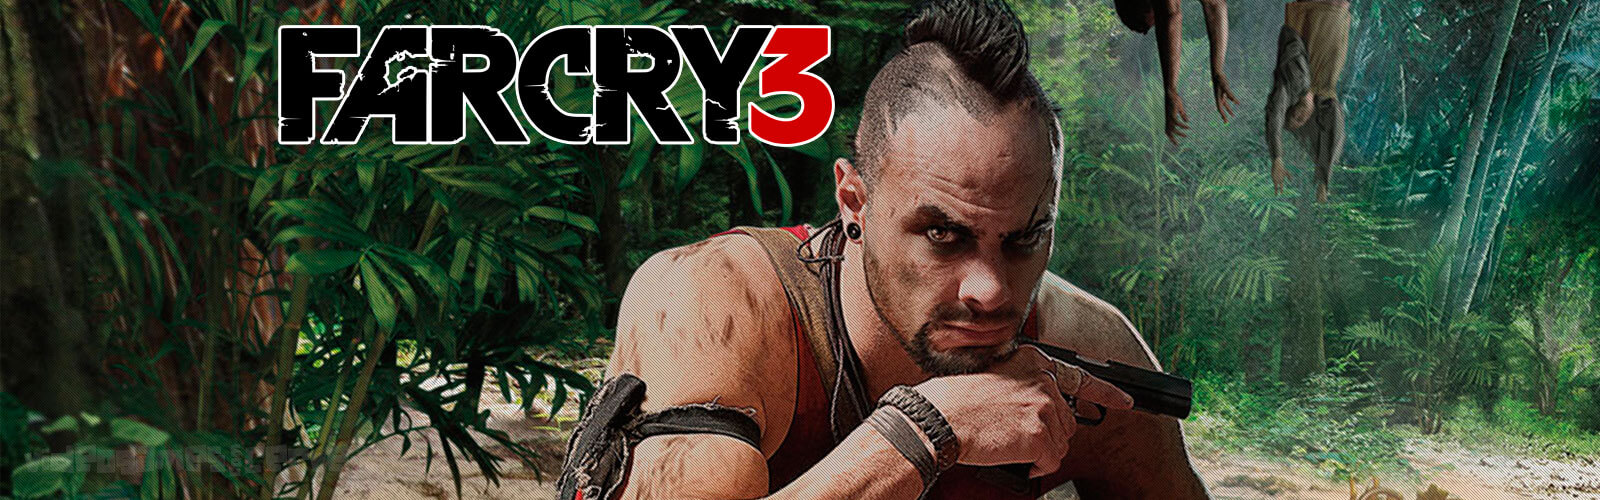 Análise - Far Cry 3 Cover